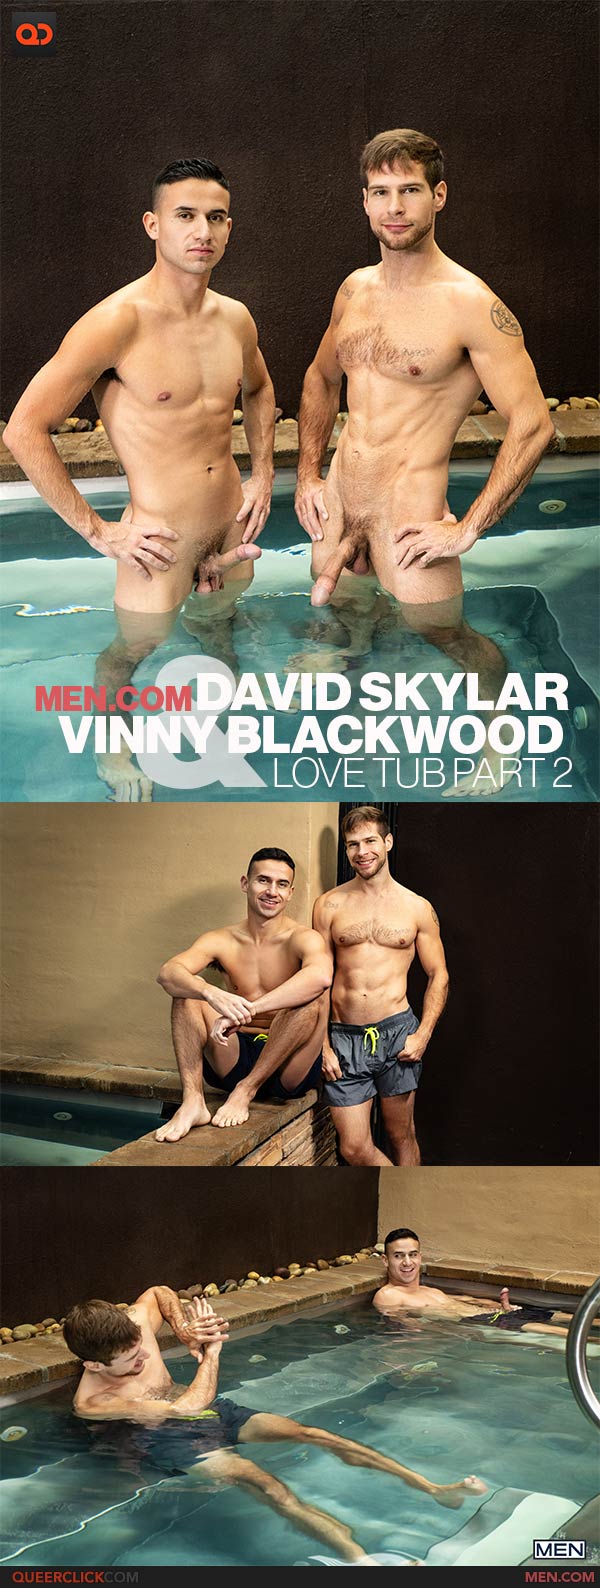 Men.com: David Skylar and Vinny Blackwood